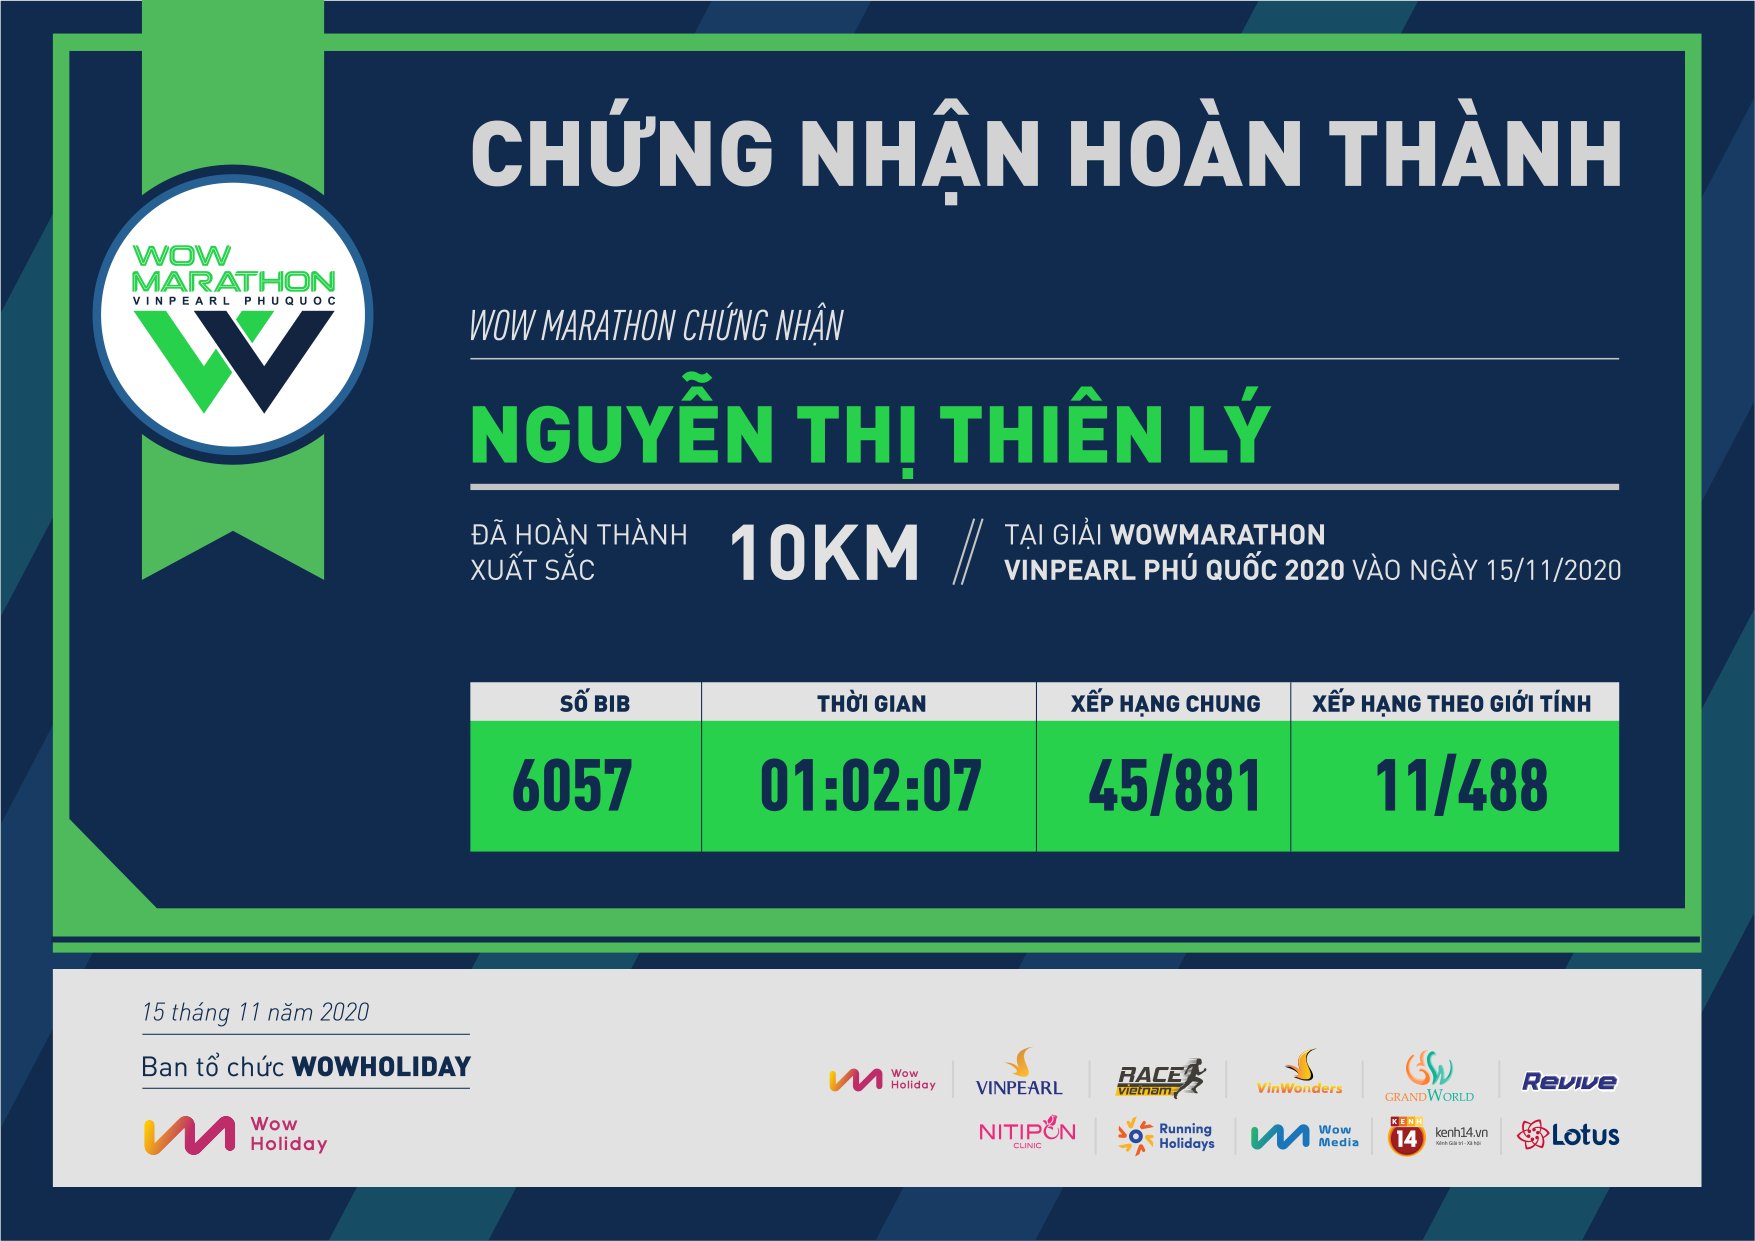 6057 - Nguyễn Thị Thiên Lý